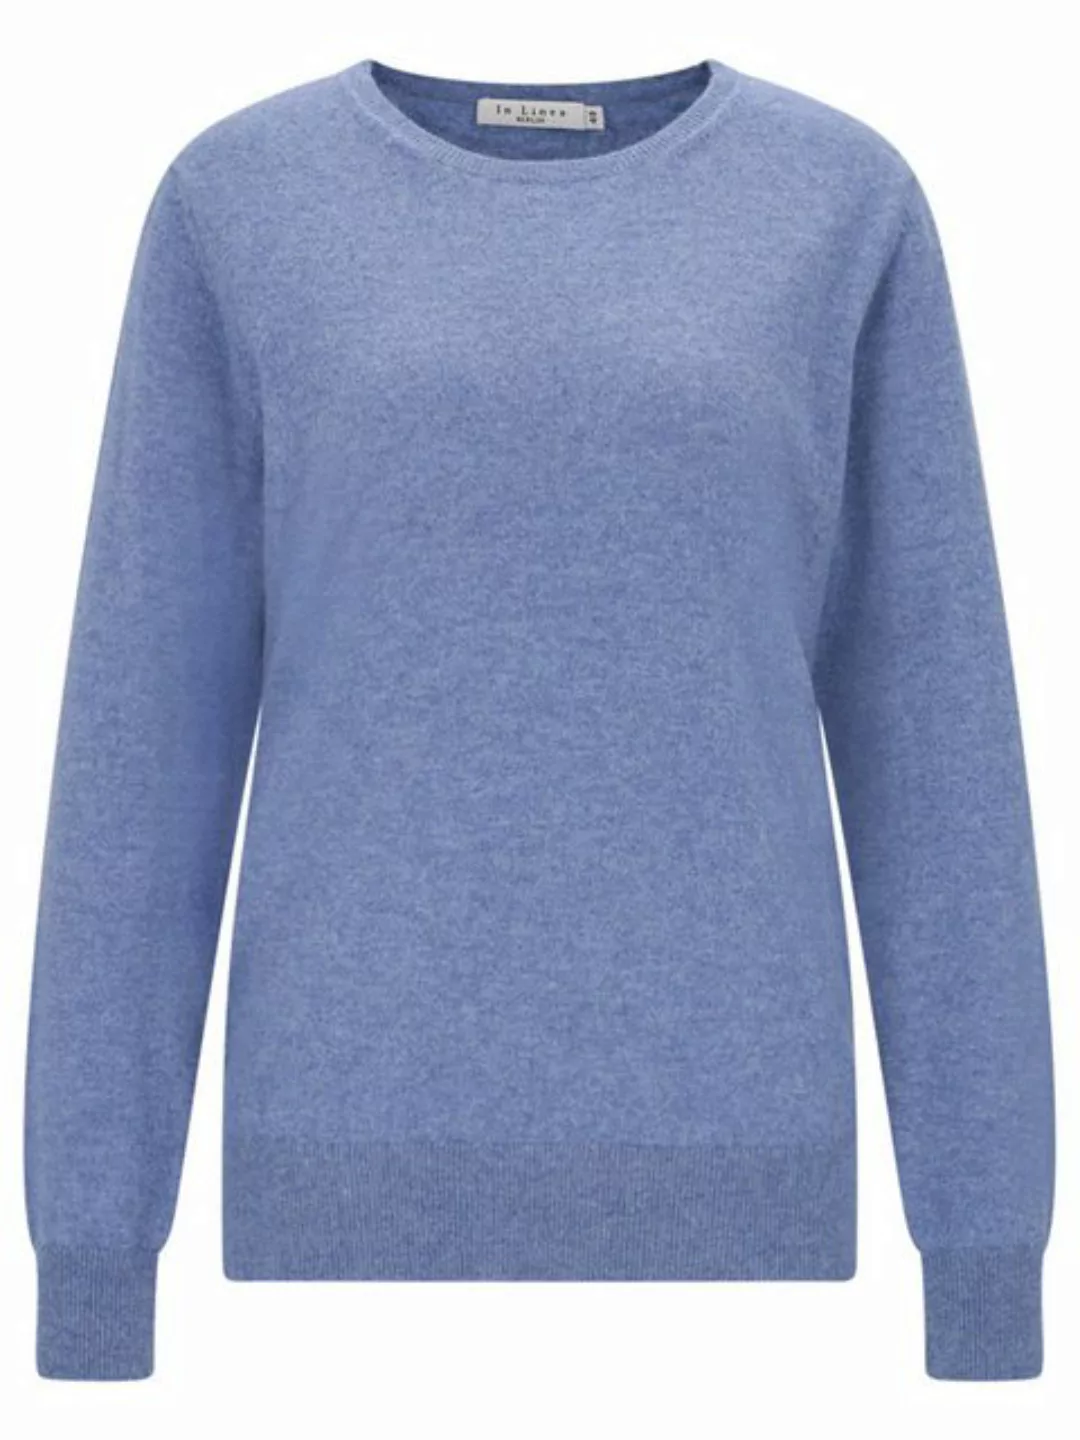 IN LINEA Sweatshirt NOS Pullover, Rundhals günstig online kaufen